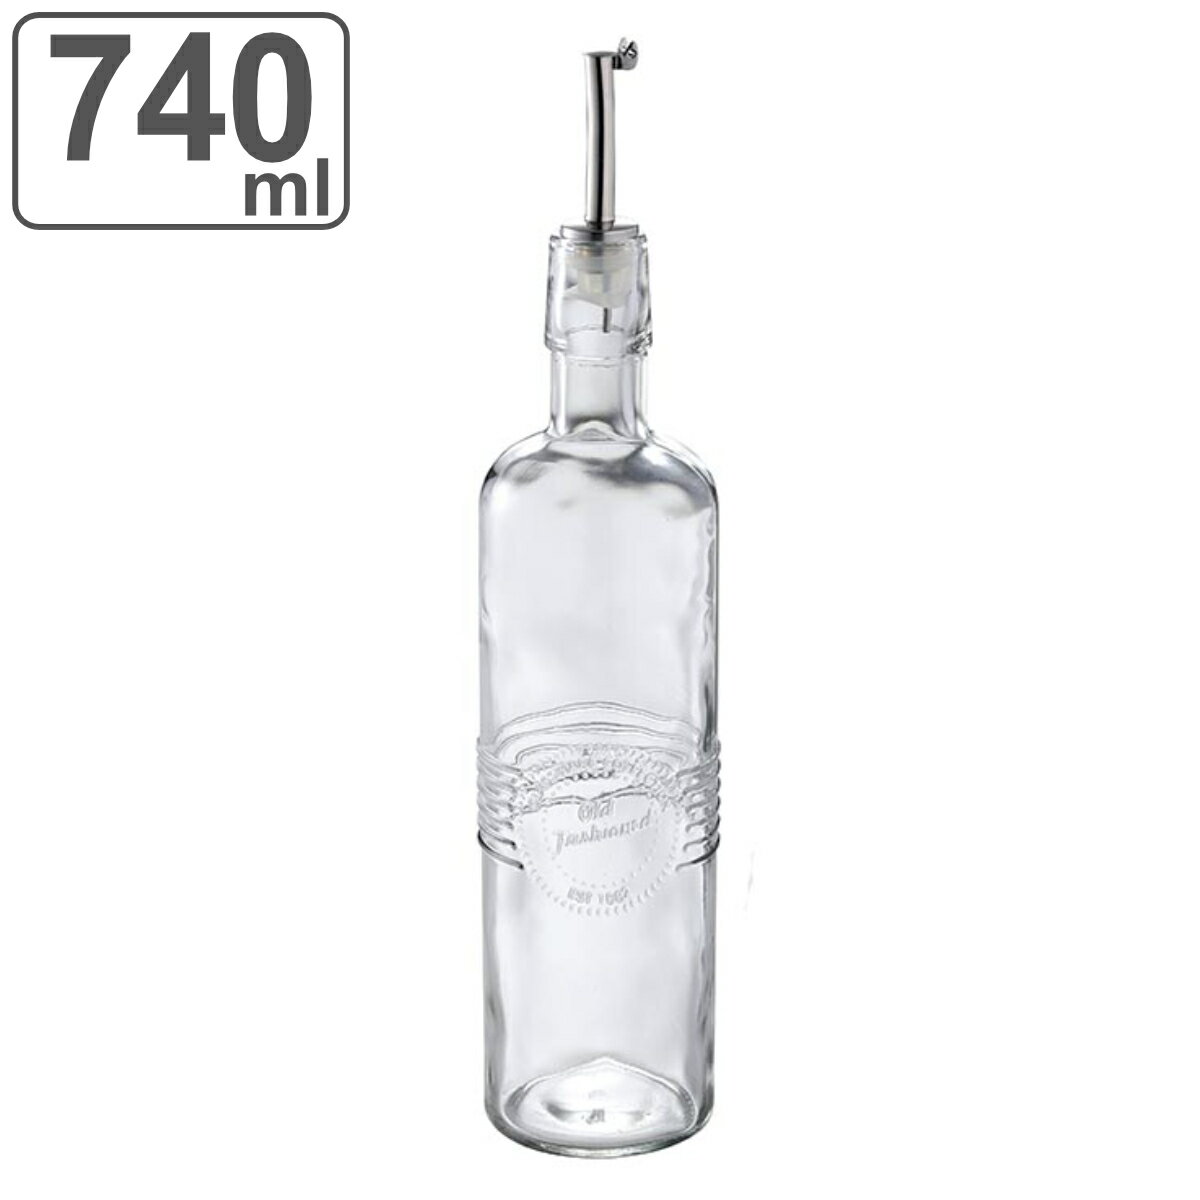 調味料入れ 740ml ガラス製 オイル&ビネガージャー L オールドファッション SALUS （ セイラス オイル ビネガー 保存容器 調味料 ボトル ビネガーボトル オイルボトル 詰め替え 調味料ボトル ガラス 740 ミリリットル ）